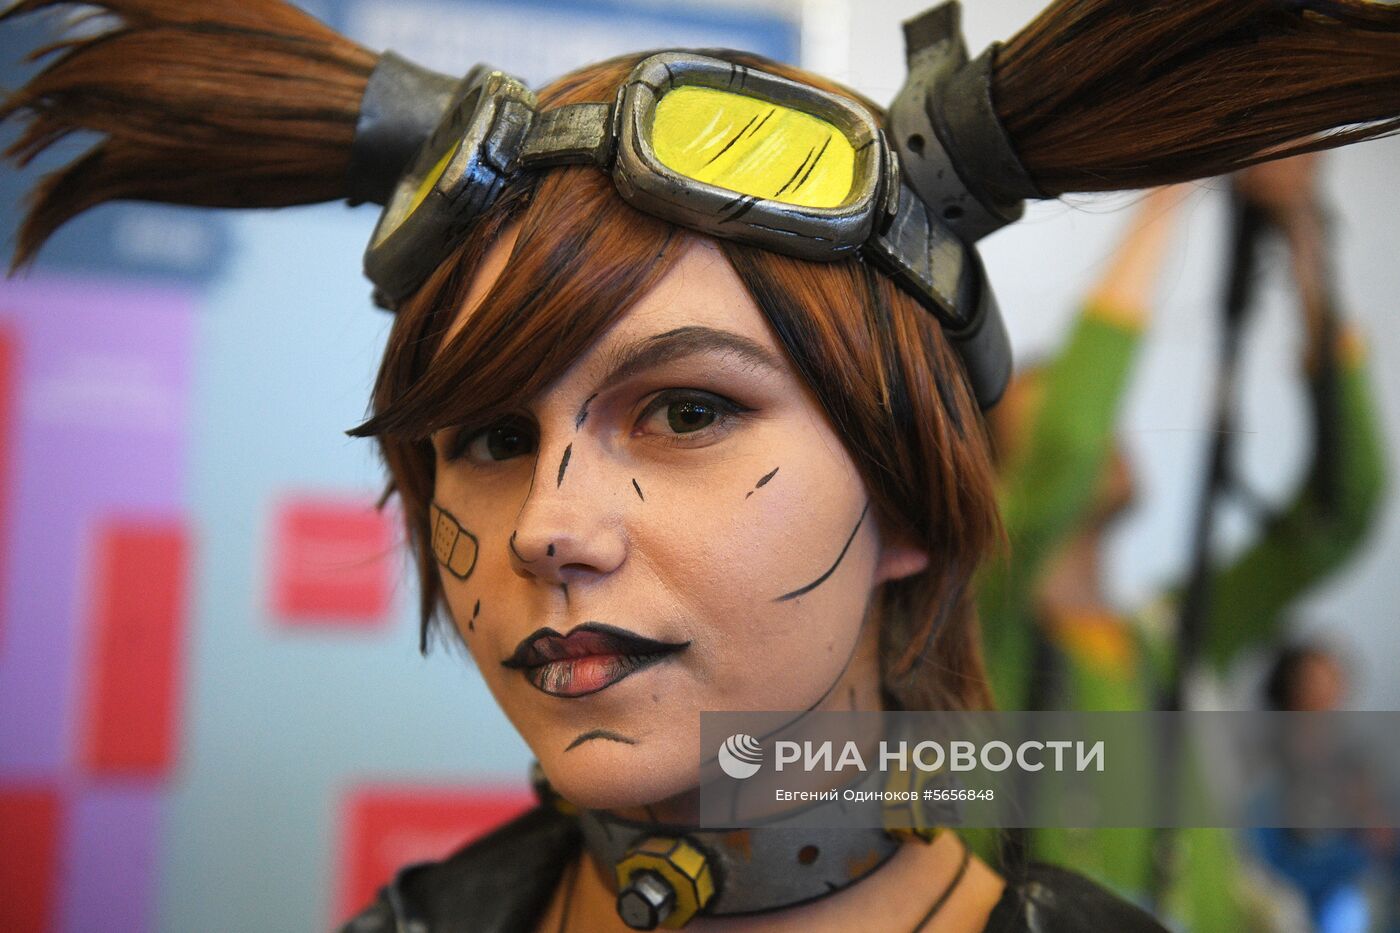 Выставка  "Игромир" и фестиваль Comic Con Russia